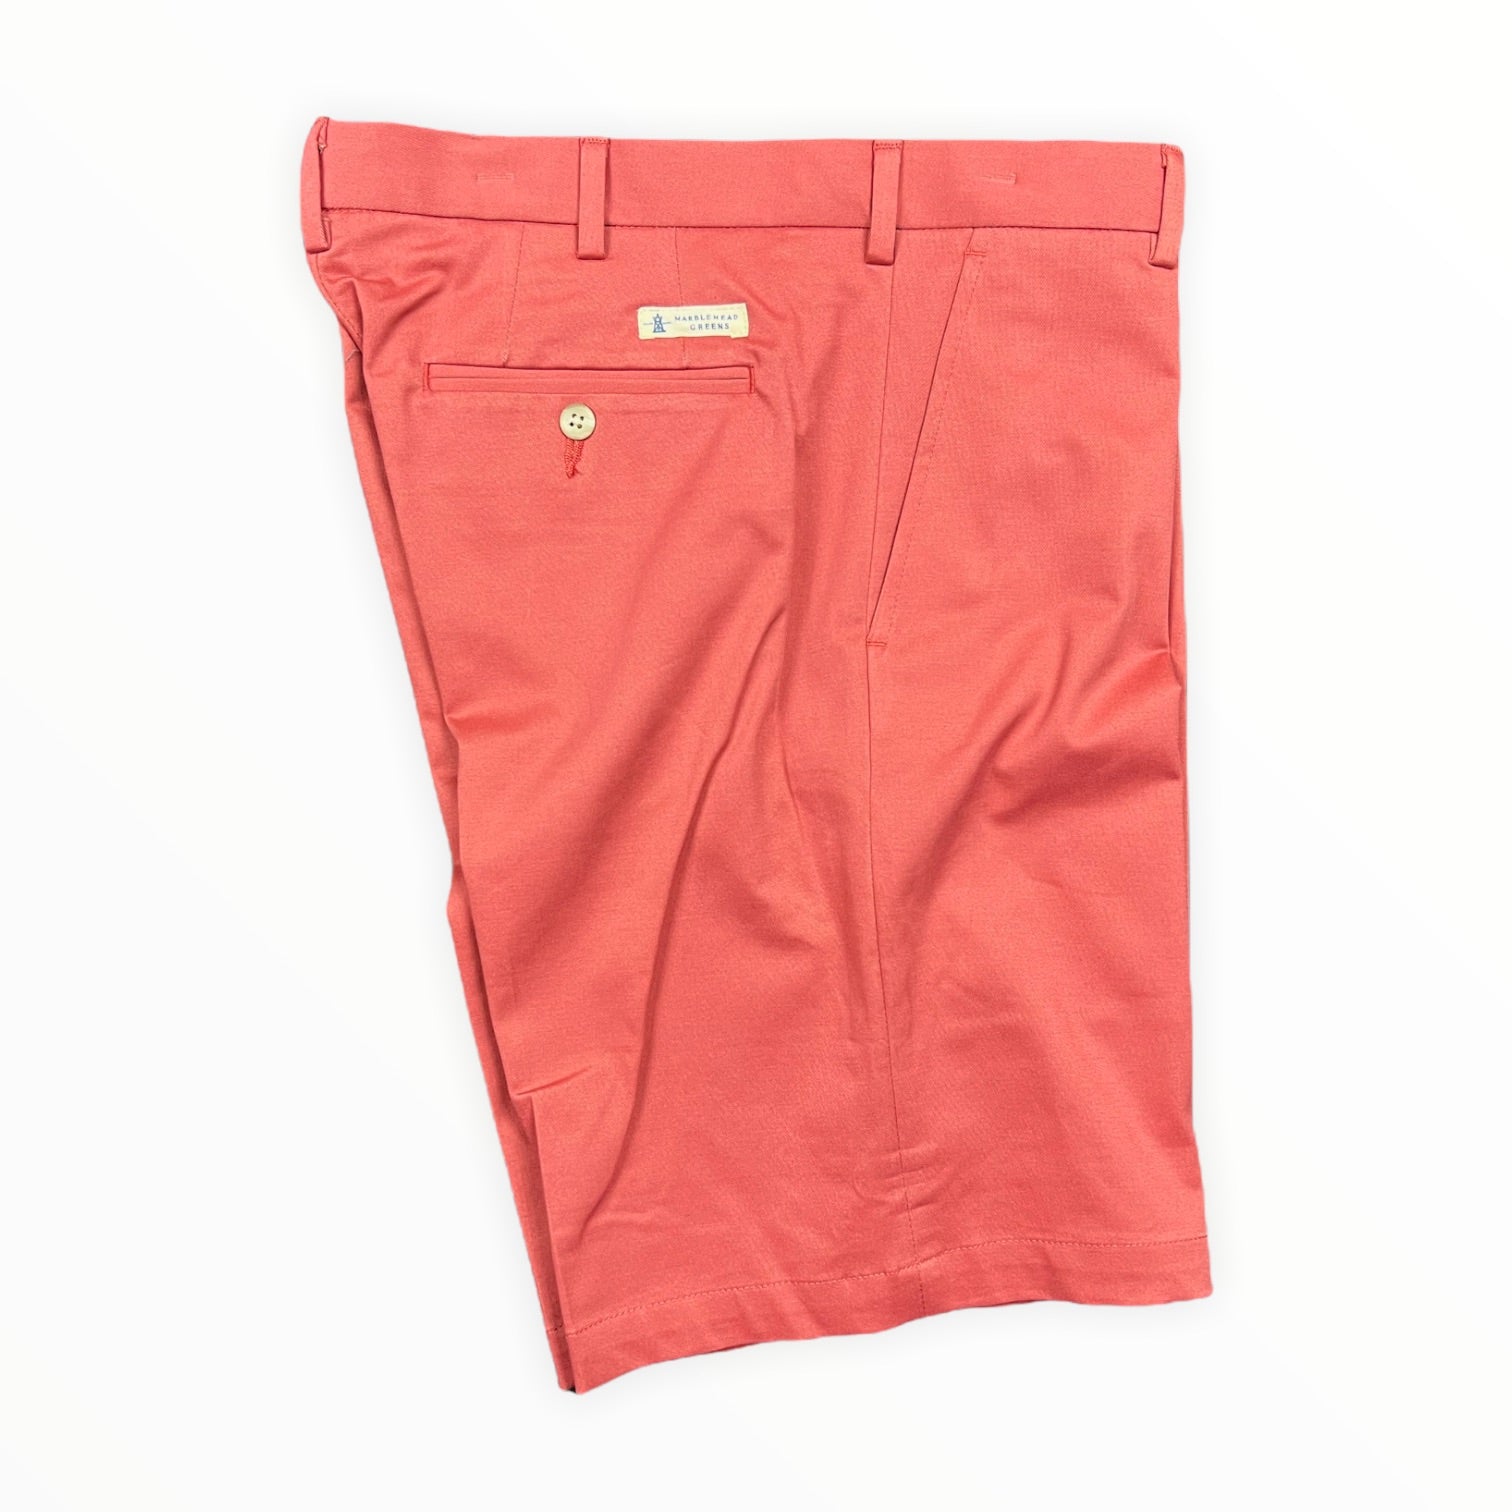 Shanty Shorts - Sailors Red